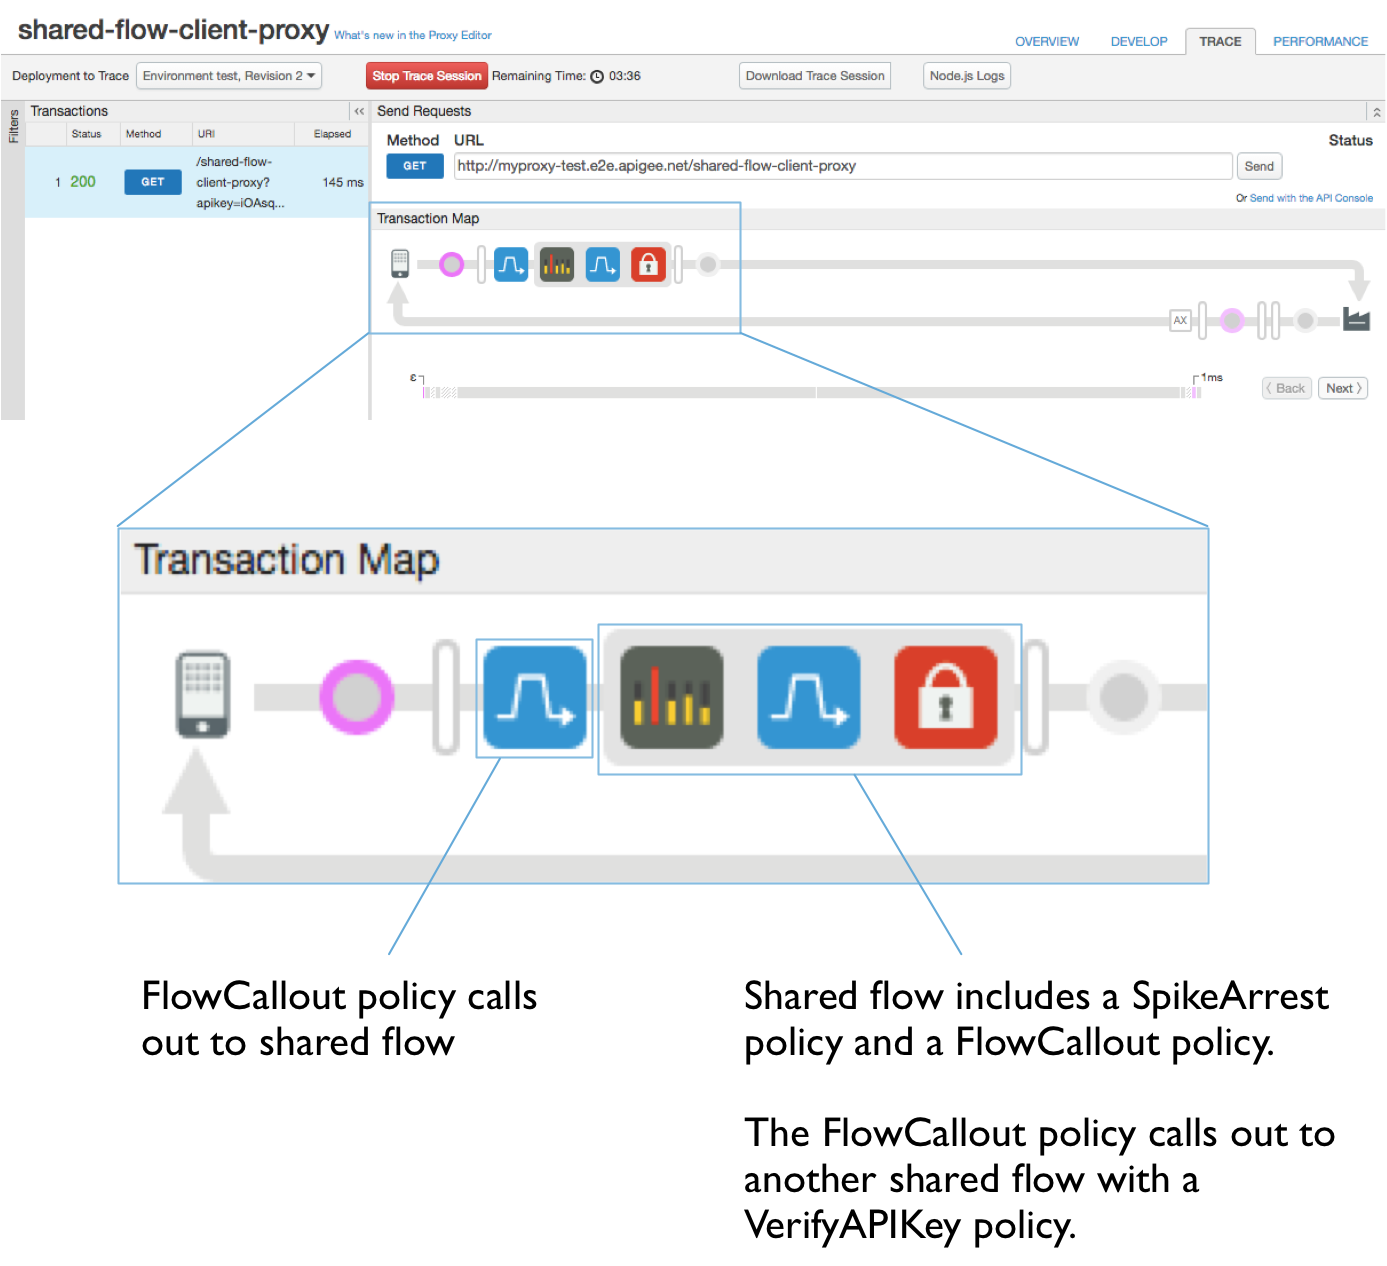 事务示意图。标注文字：
a) FlowCallout 政策调用共享流。b) 共享流包括 SpikeArrest 政策和 FlowCallout 政策。FlowCallout 政策使用 VerifyAPIKey 政策调用另一个共享流。